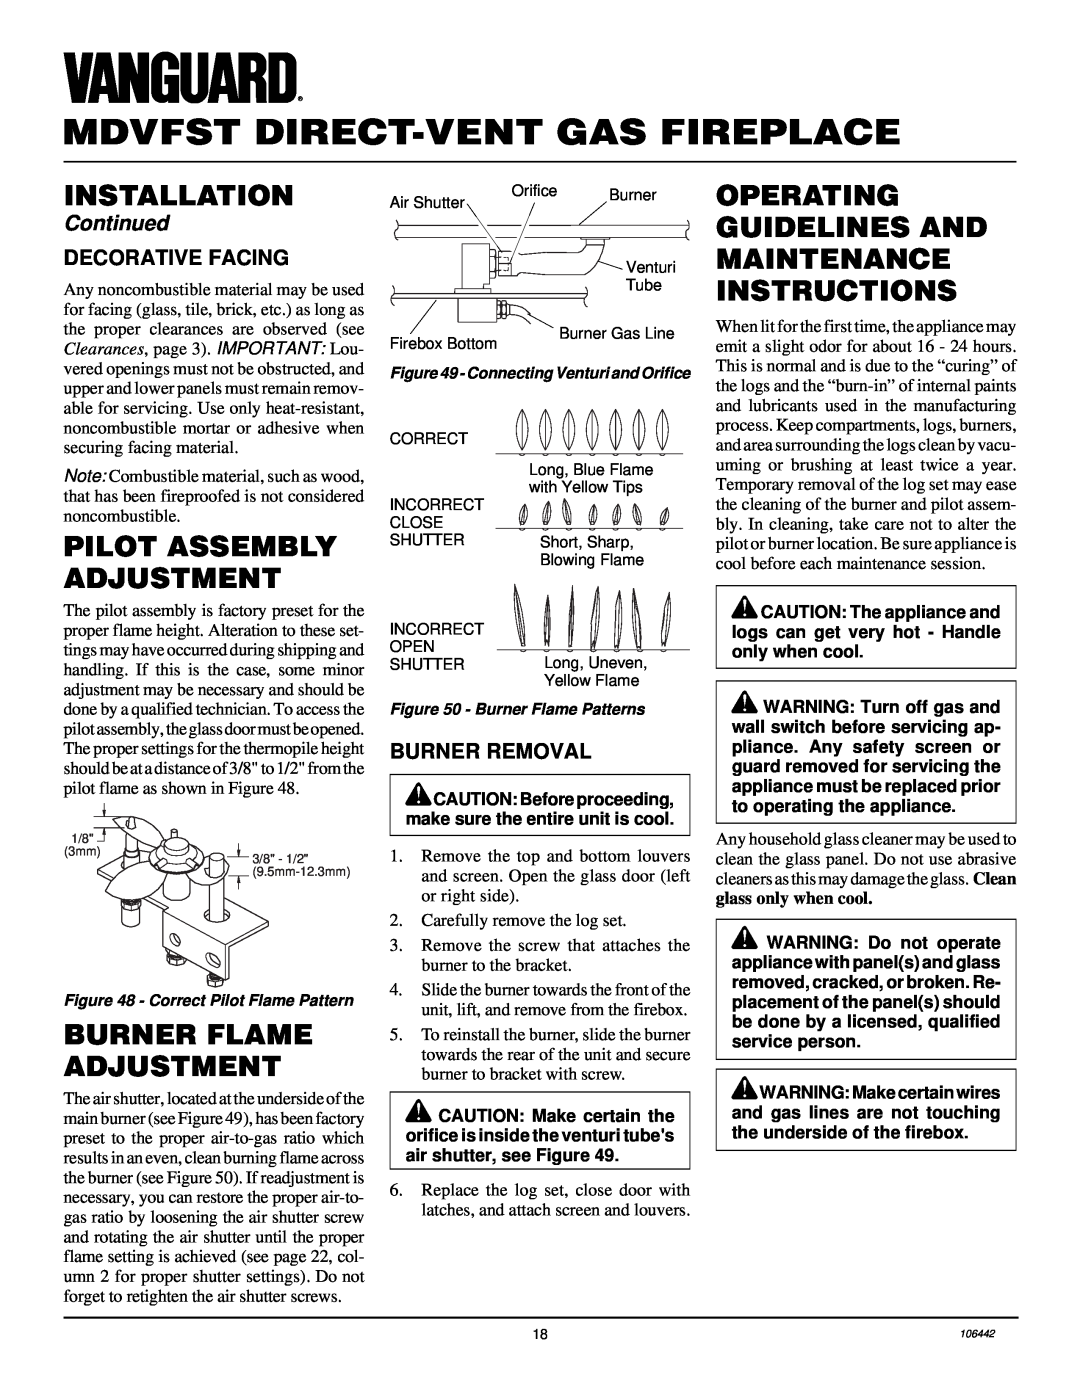 Desa MDVFST Operating Guidelines And, Maintenance Instructions, Pilot Assembly Adjustment, Burner Flame Adjustment 